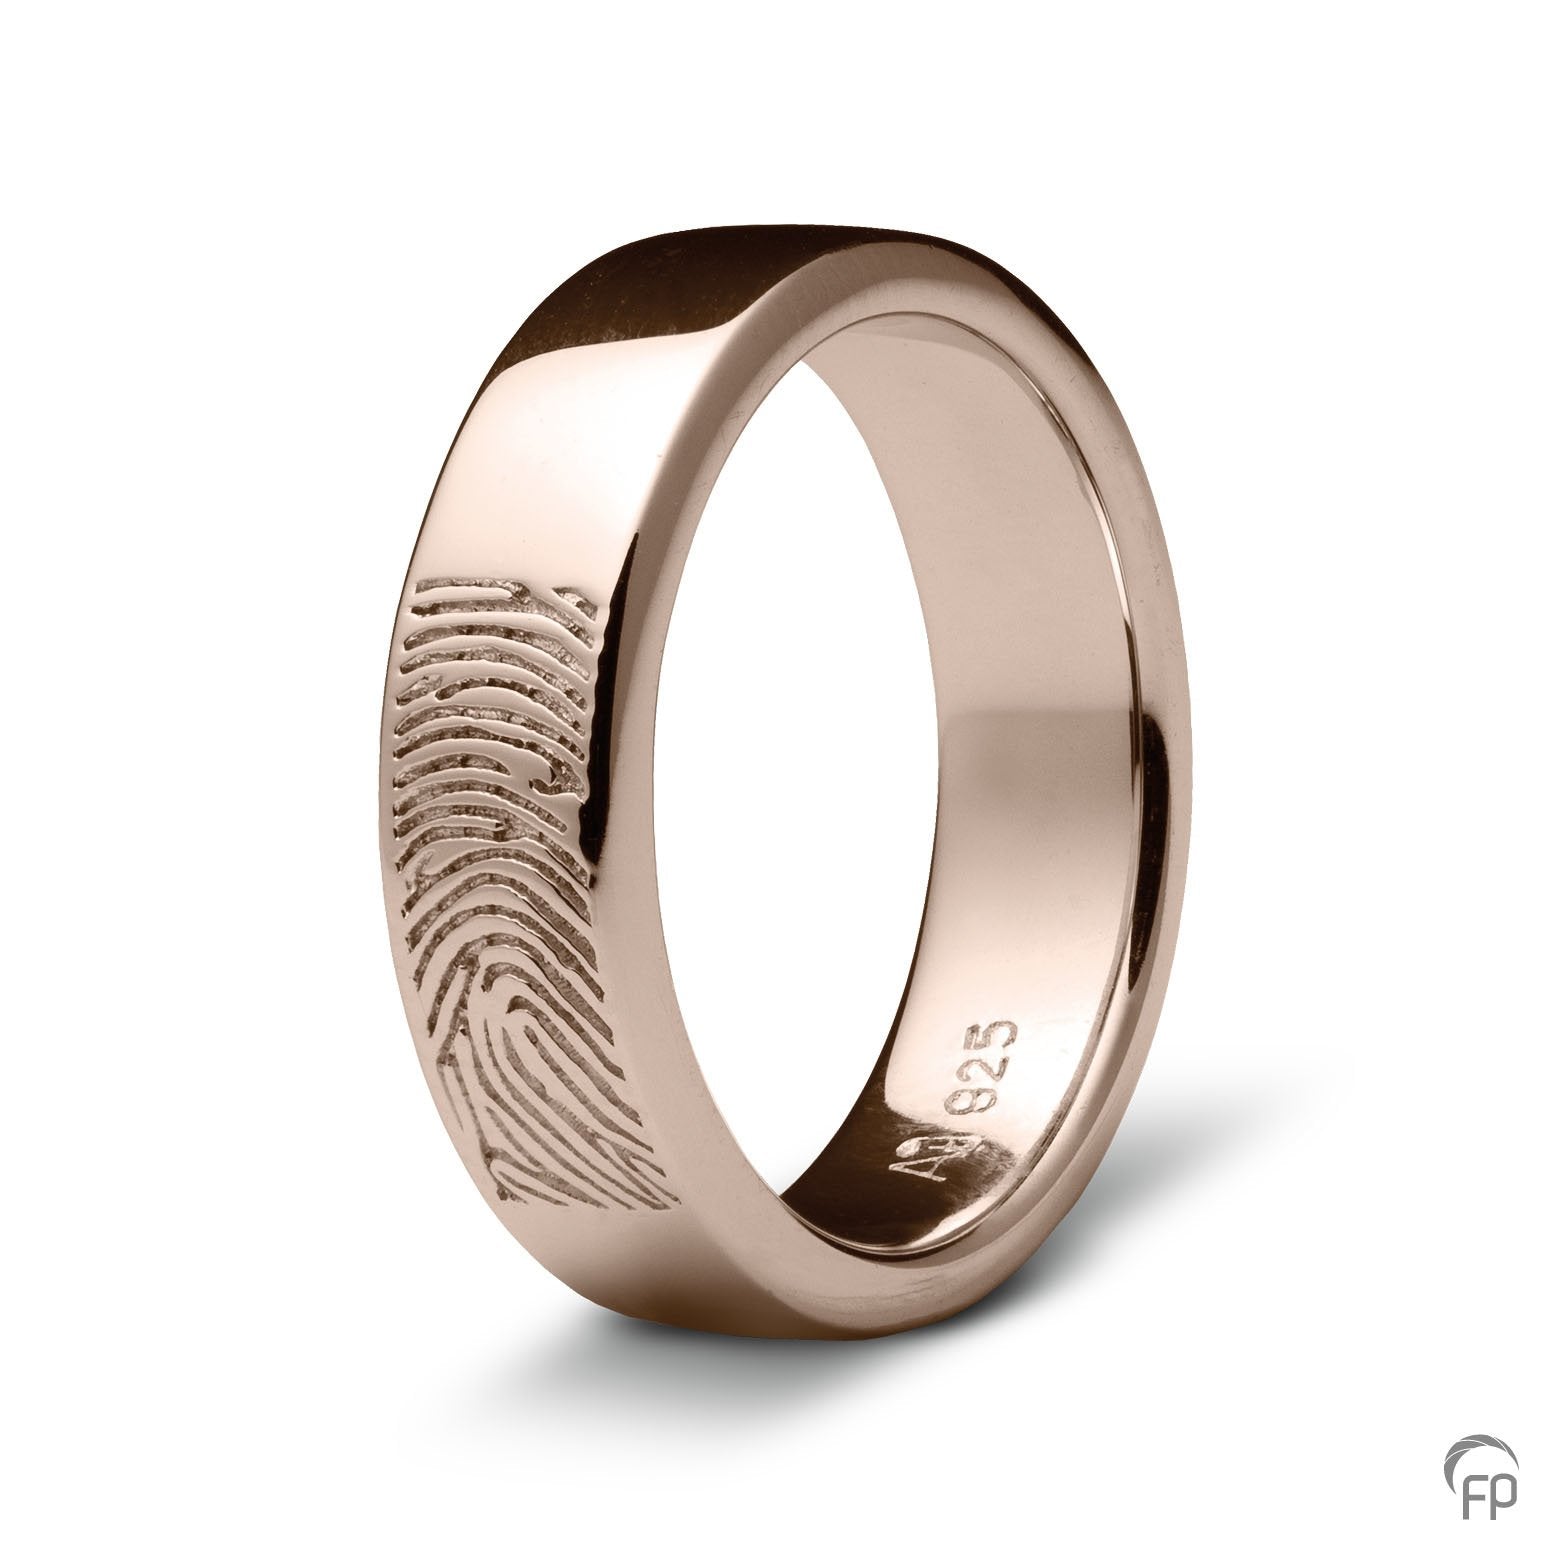 Deze ring van 7 mm breedte met vingerafdruk, heeft een stijlvol en strak design. Het is een tijdloos gedenksieraad met een afwerking naar keuze in glans of matte look. 